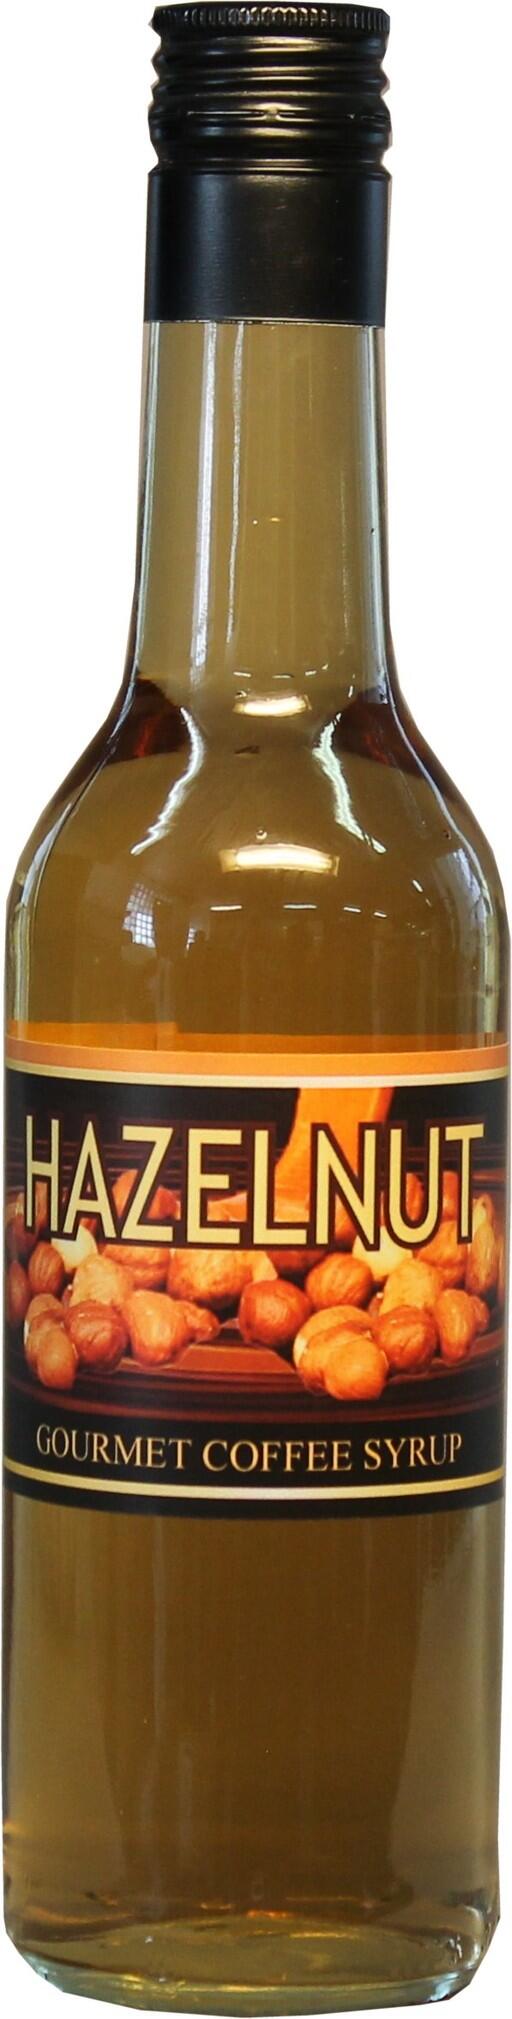 Hazelnut blandas till goda kaffedrinkar med smak av hasselnöt.